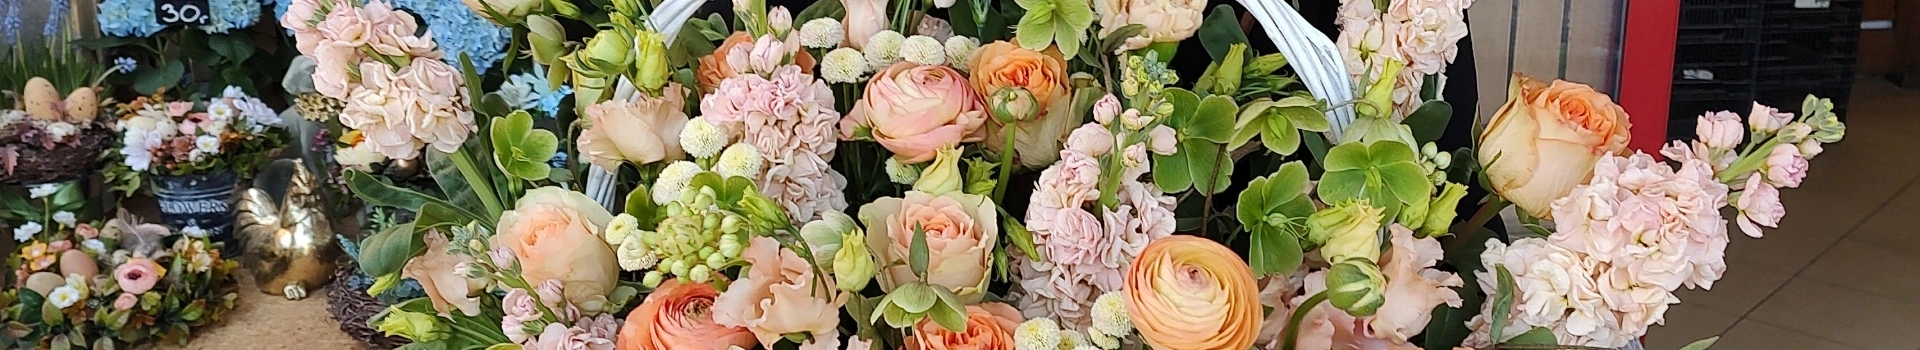 kwiaty w różnych kolorach